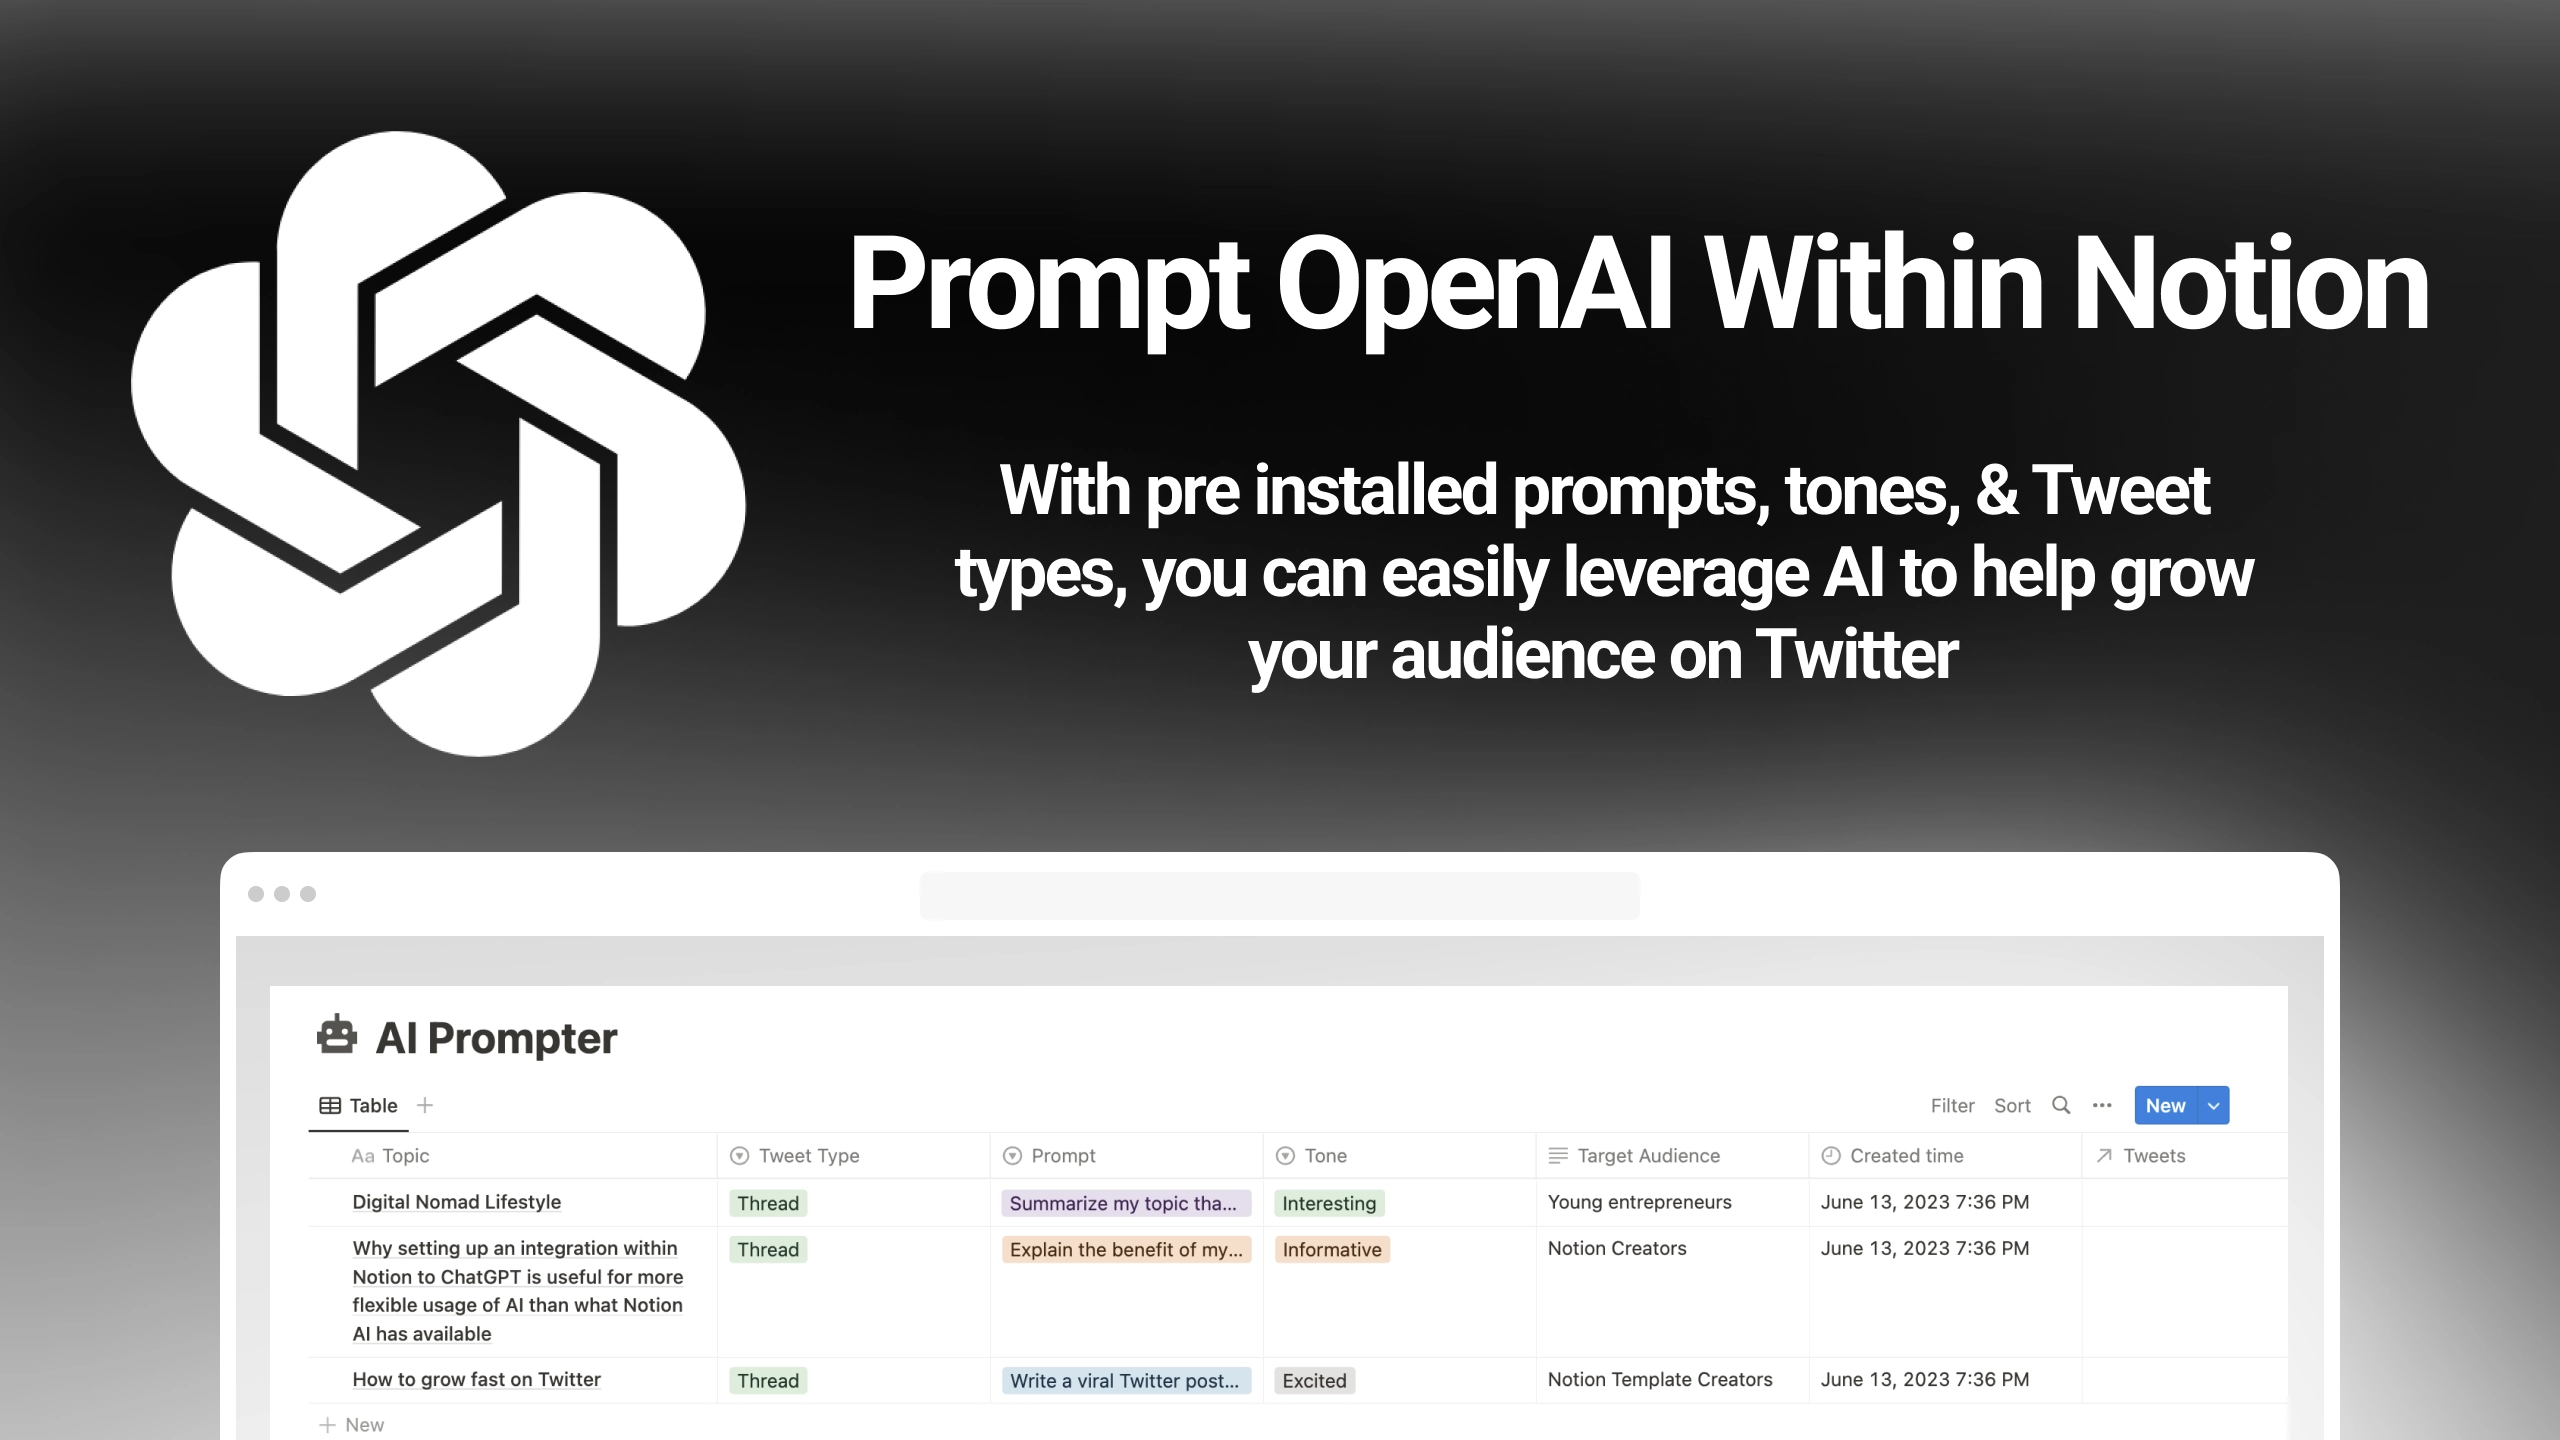 Notion OpenAI Tweet Prompter